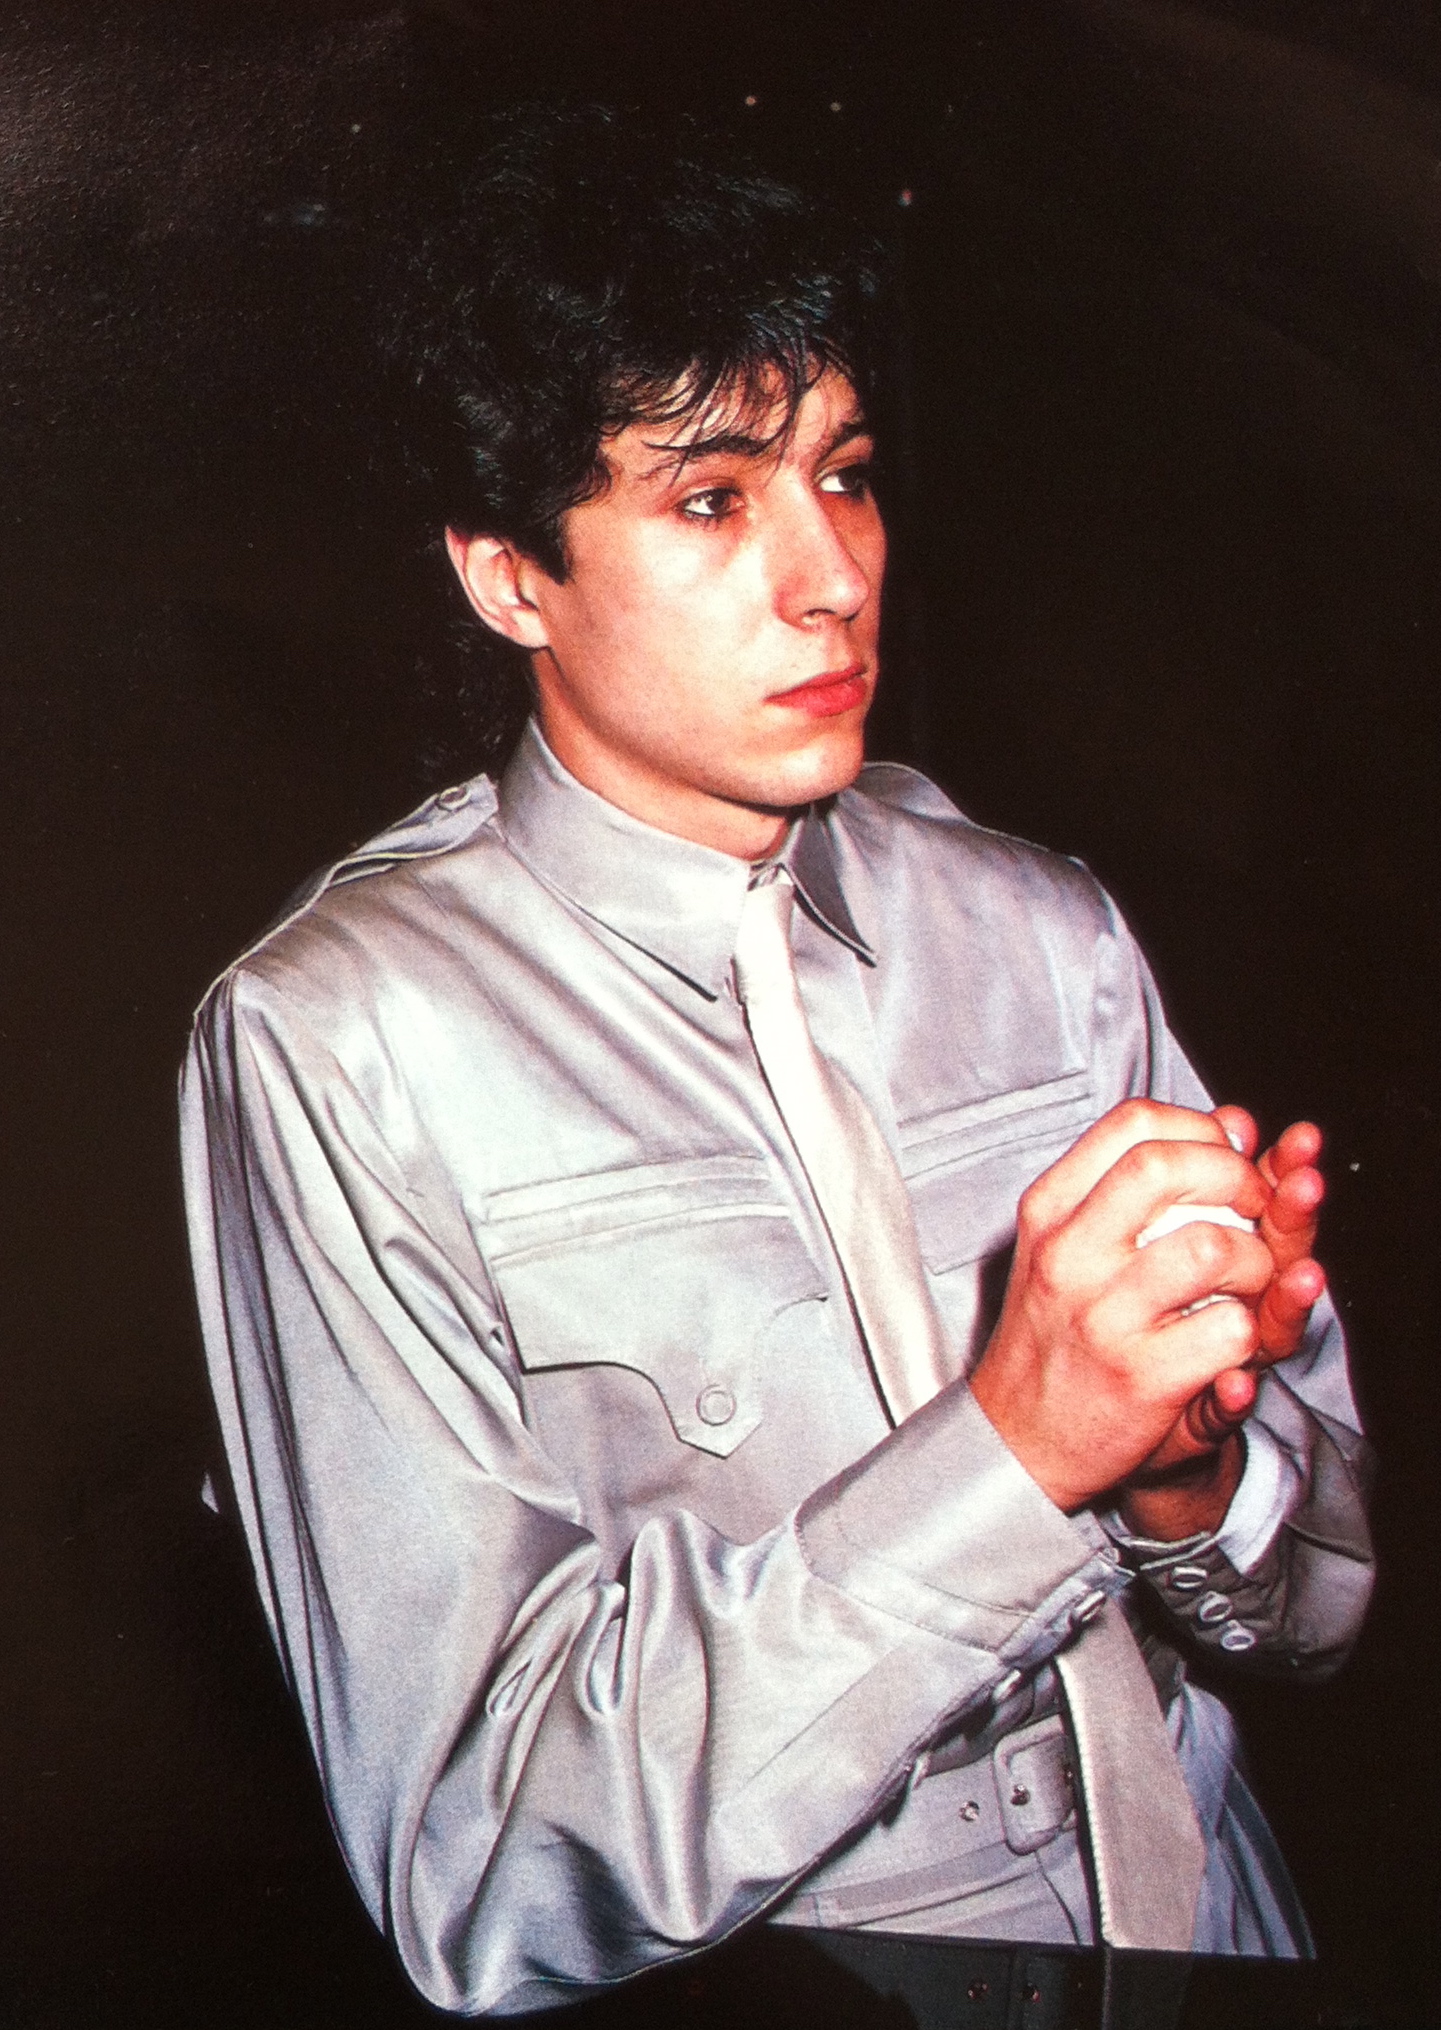 Richard in 1983